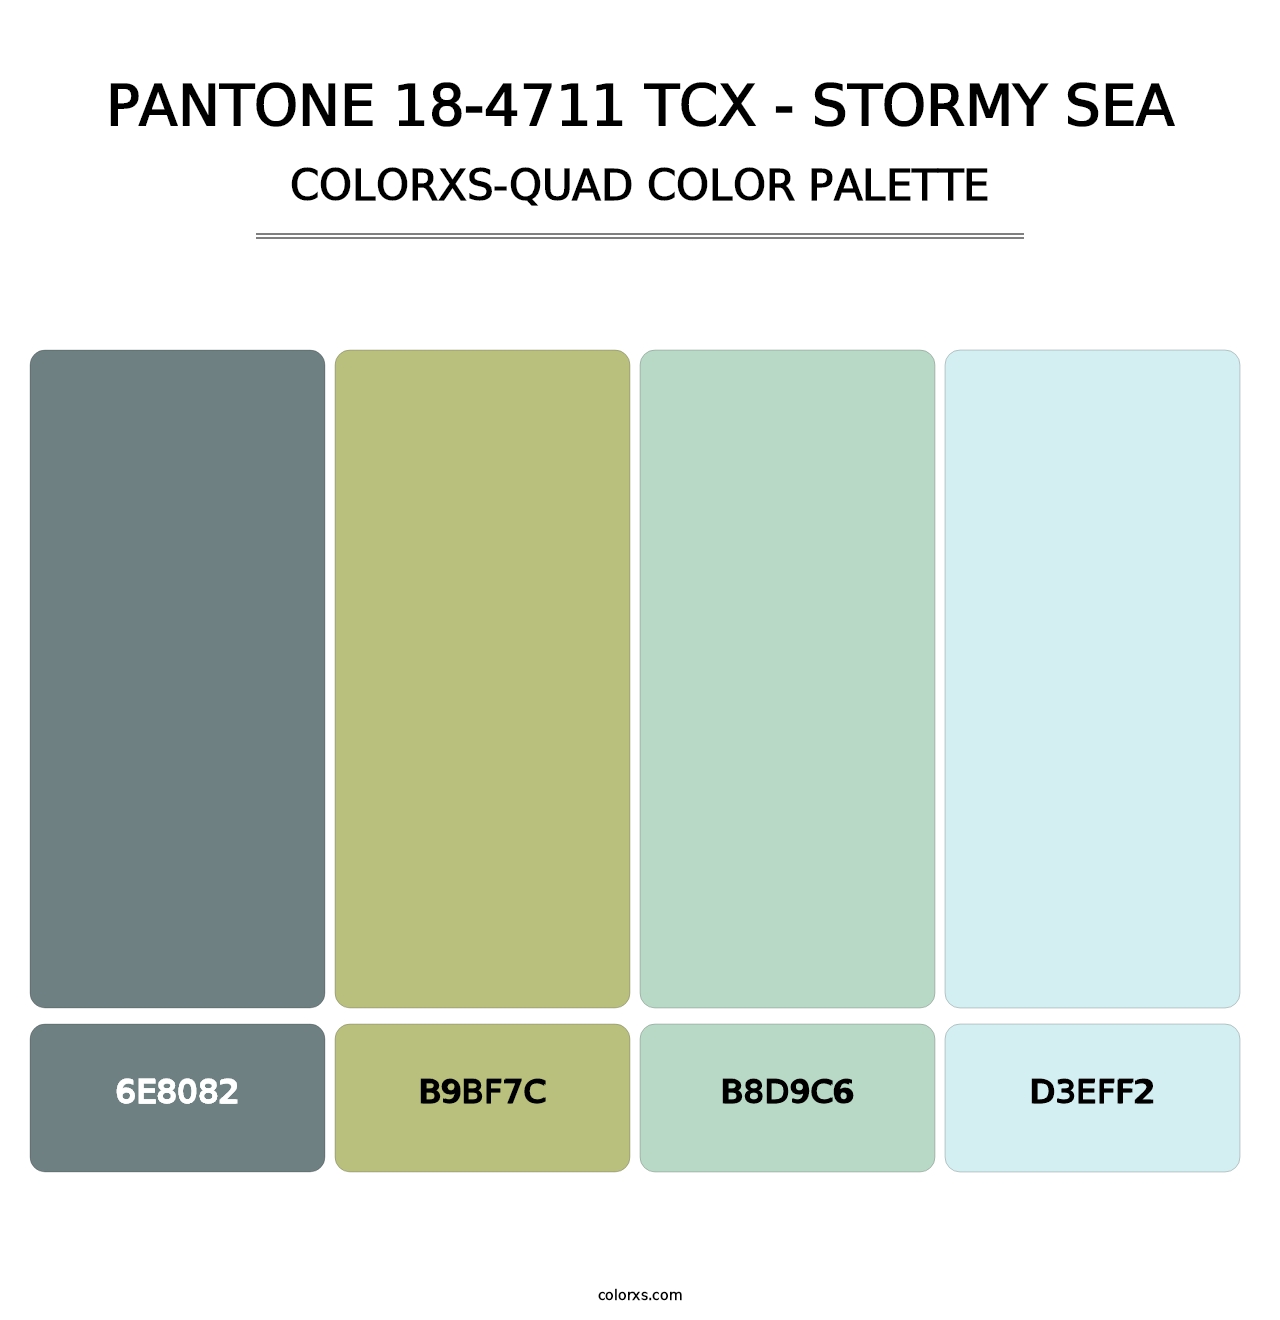 PANTONE 18-4711 TCX - Stormy Sea - Colorxs Quad Palette